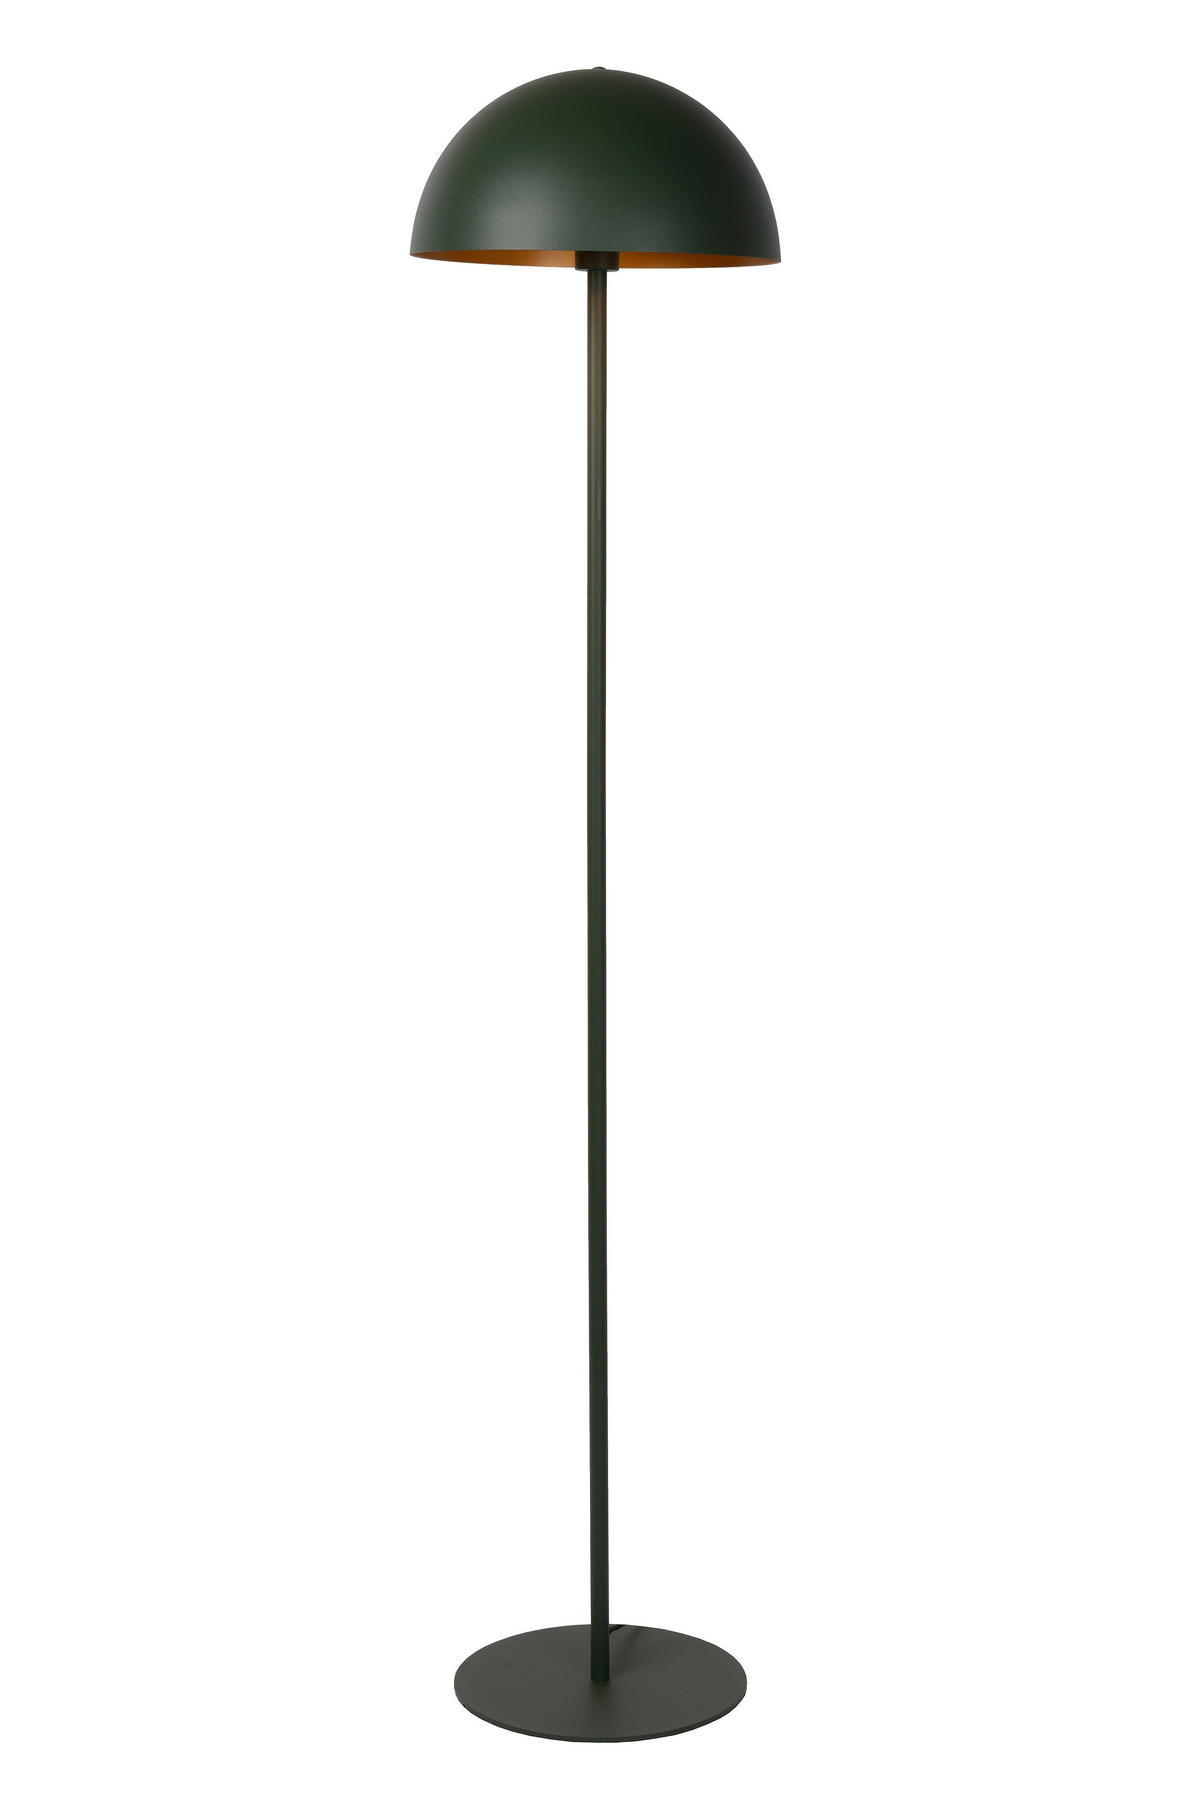 STEHLEUCHTE 160/35 cm    - Messingfarben/Grün, Design, Metall (160/35cm) - Lucide